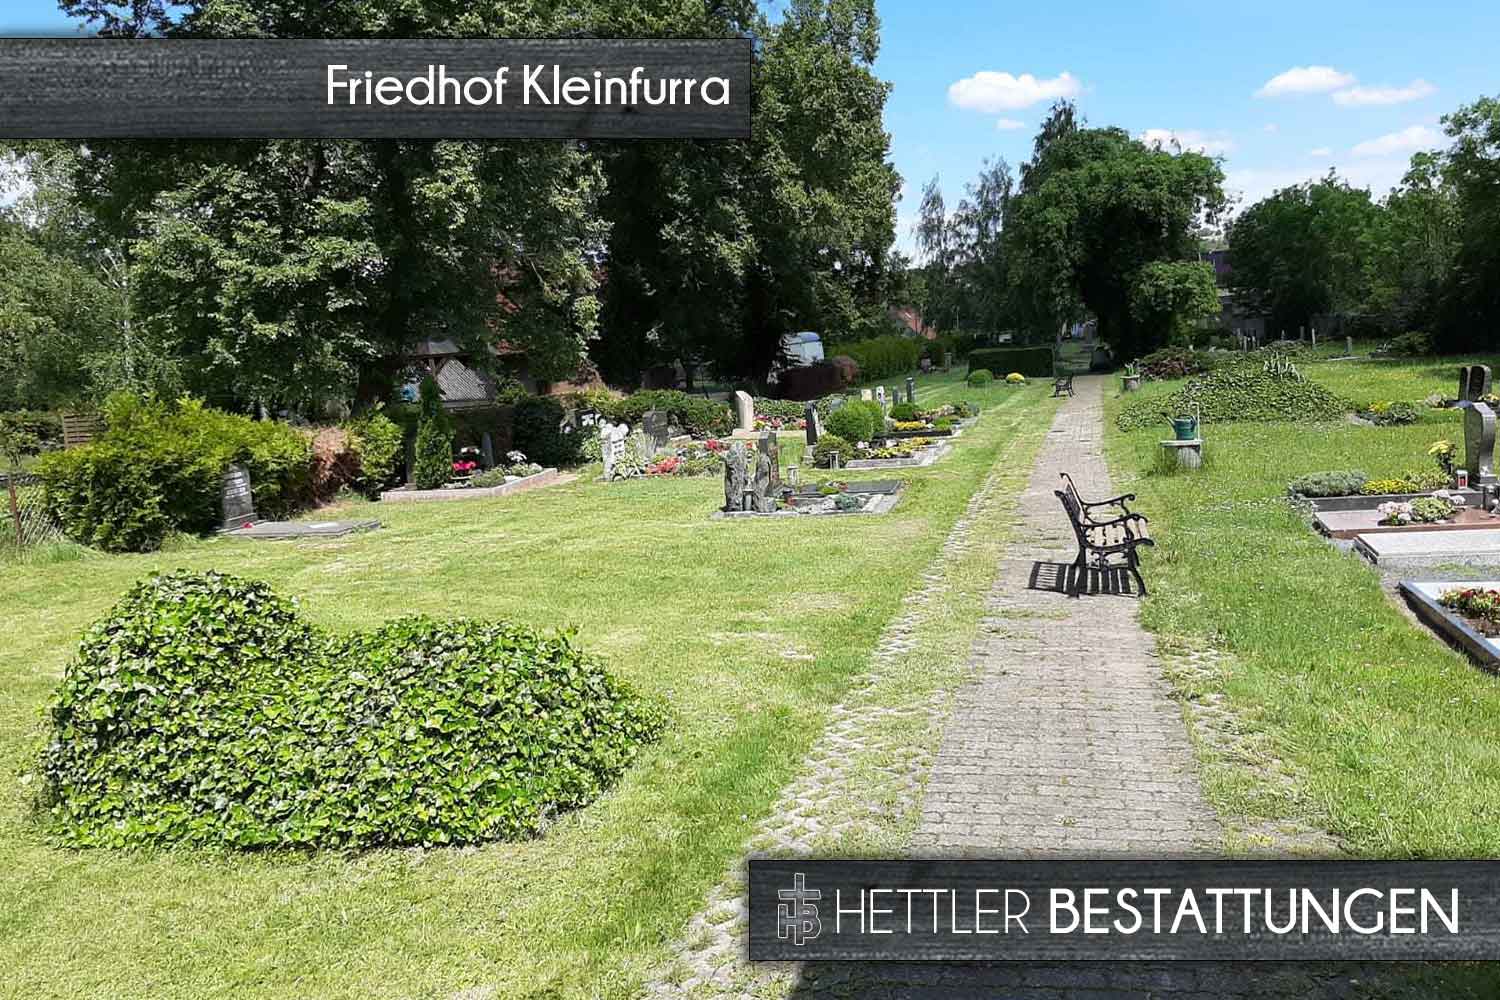 Friedhof in Kleinfurra. Ihr Ort des Abschieds mit Hettler Bestattungen.